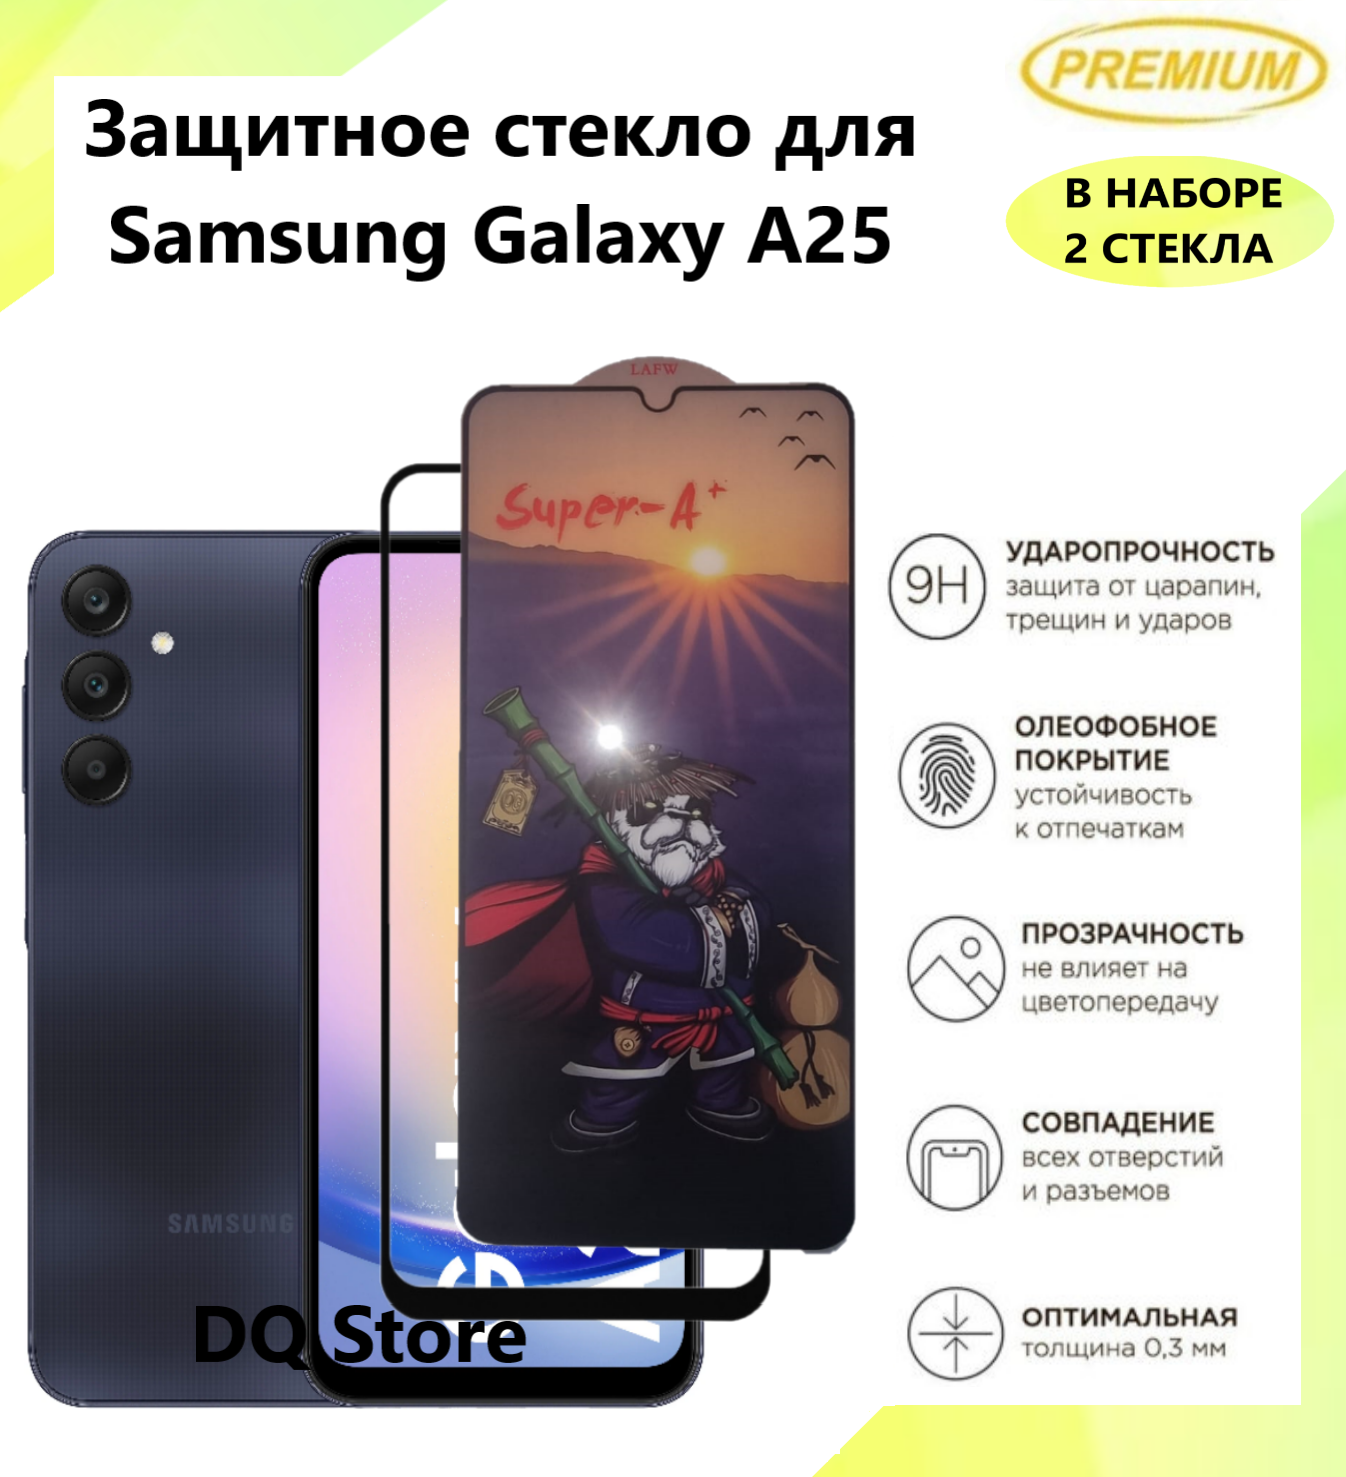 2 Защитных стекла на Samsung Galaxy A25 / Галакси А25 . Полноэкранные защитные стекла с олеофобным покрытием Premium